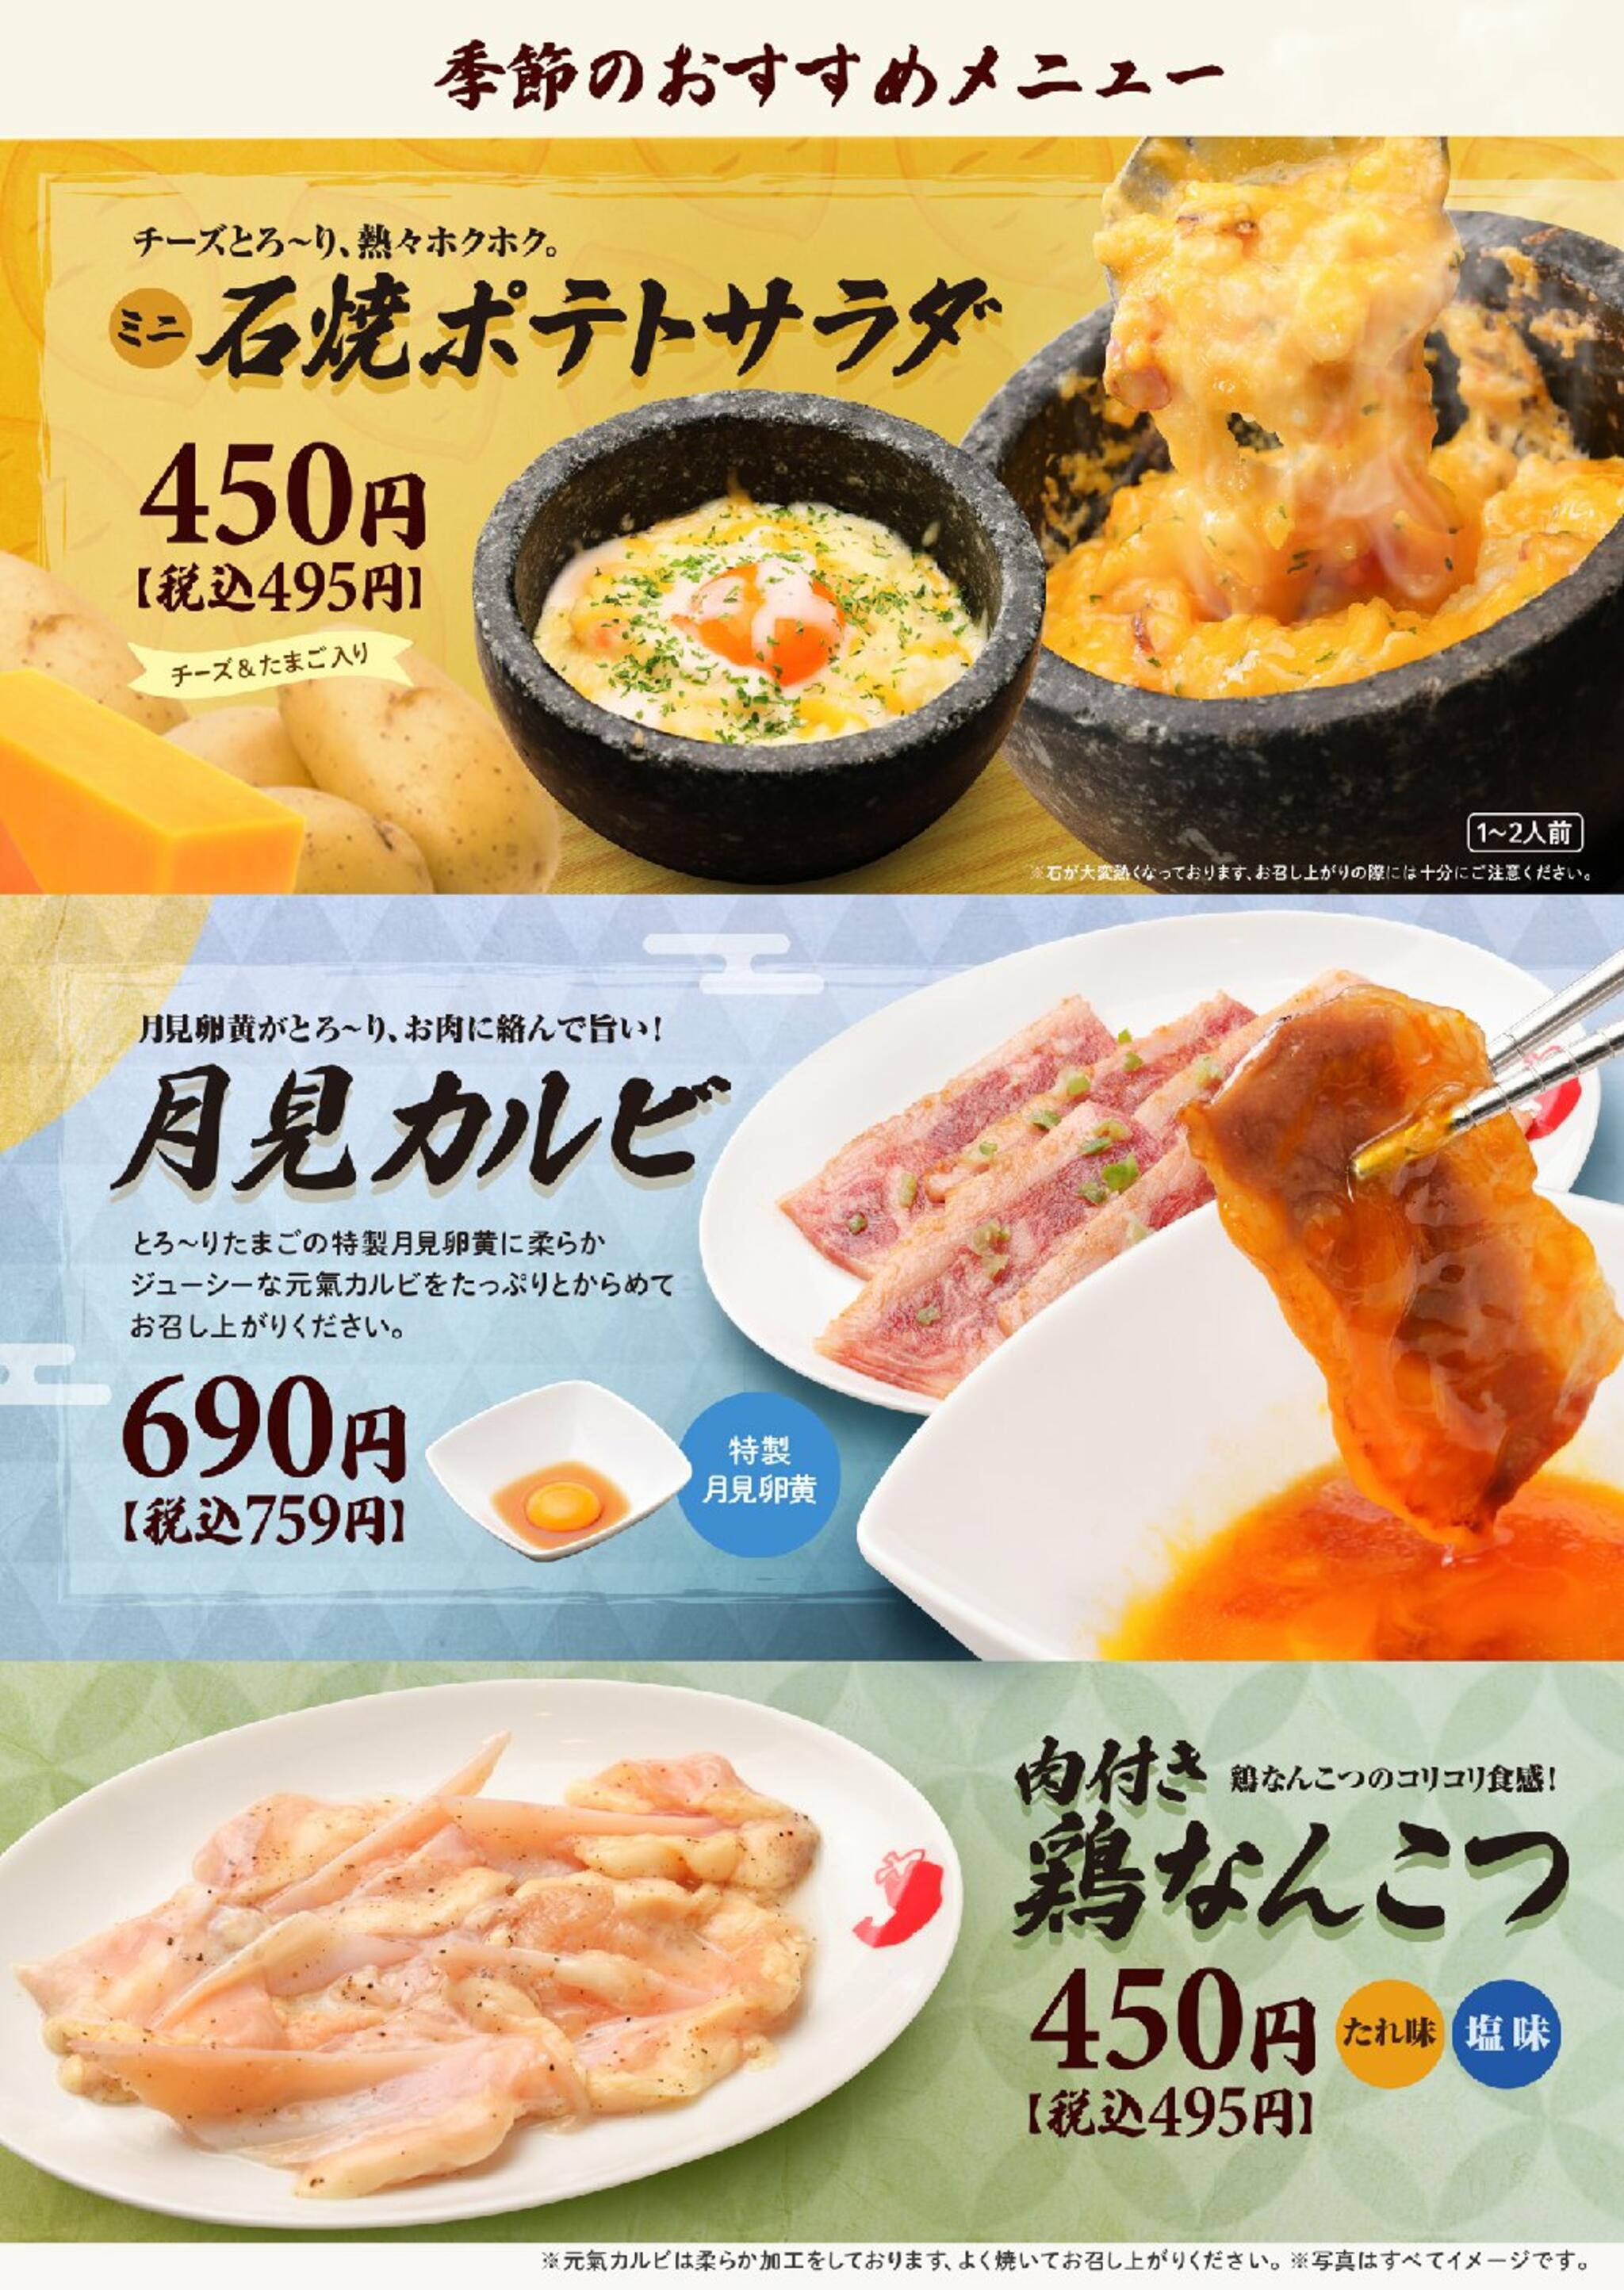 焼肉冷麺やまなか家 西多賀店からのお知らせ(☆★☆ 季節のおすすめメニュー ☆★☆)に関する写真